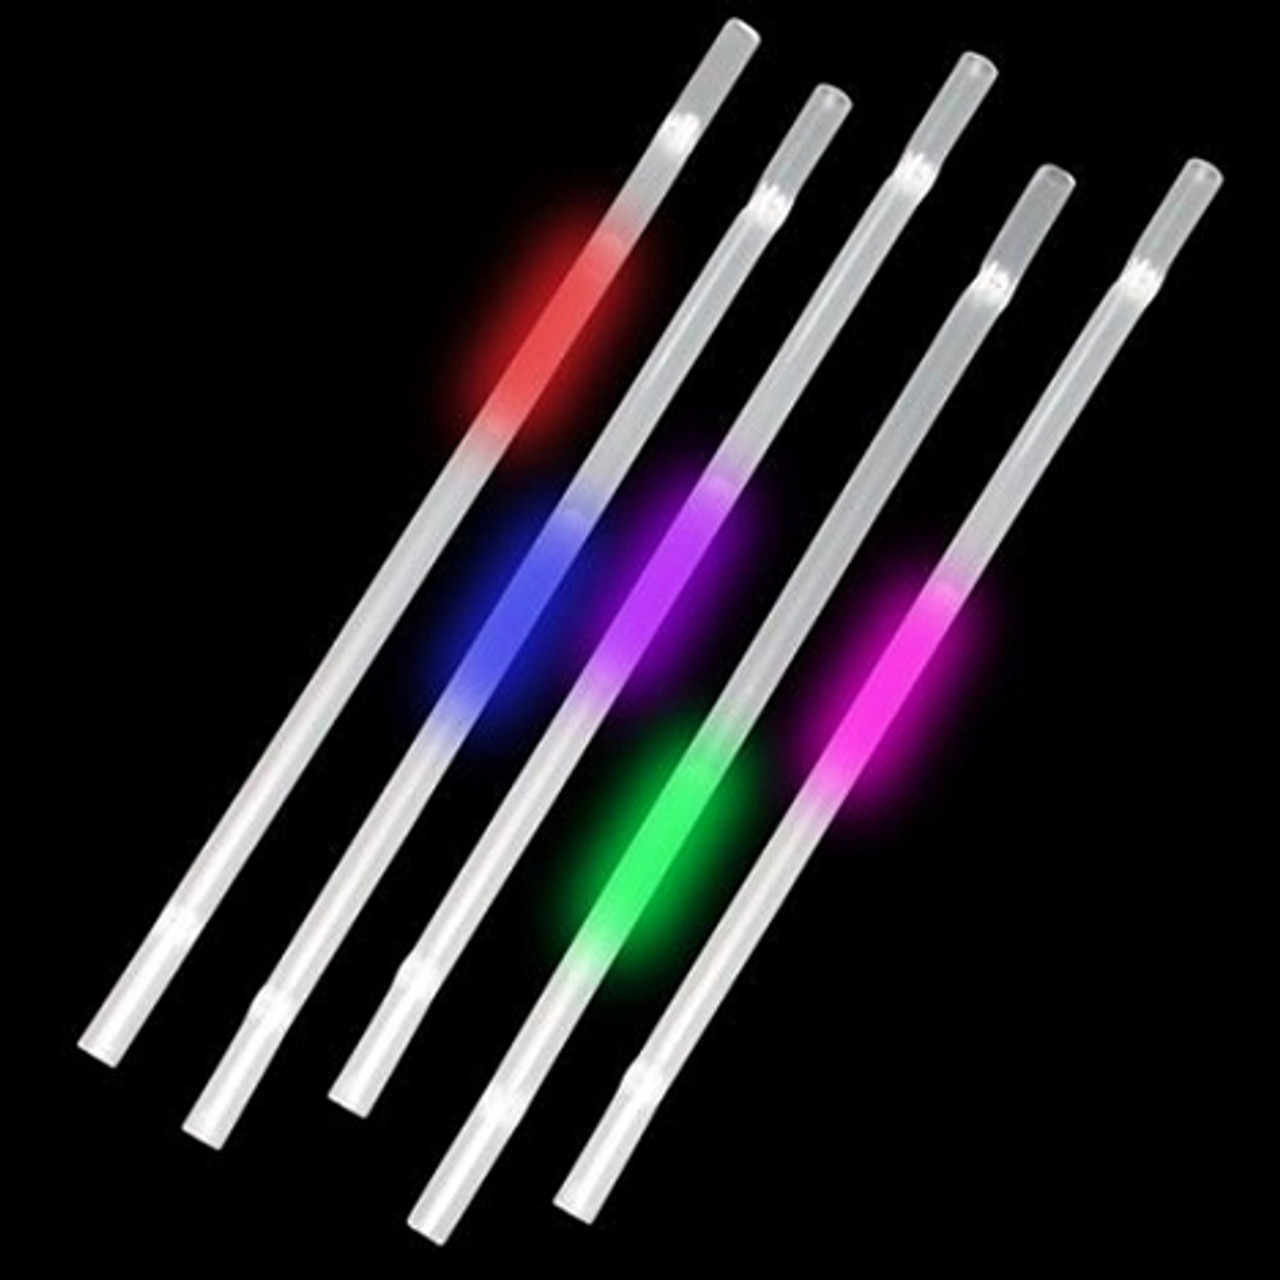 Light Up Swizzle Sticks & Glowing Straws by